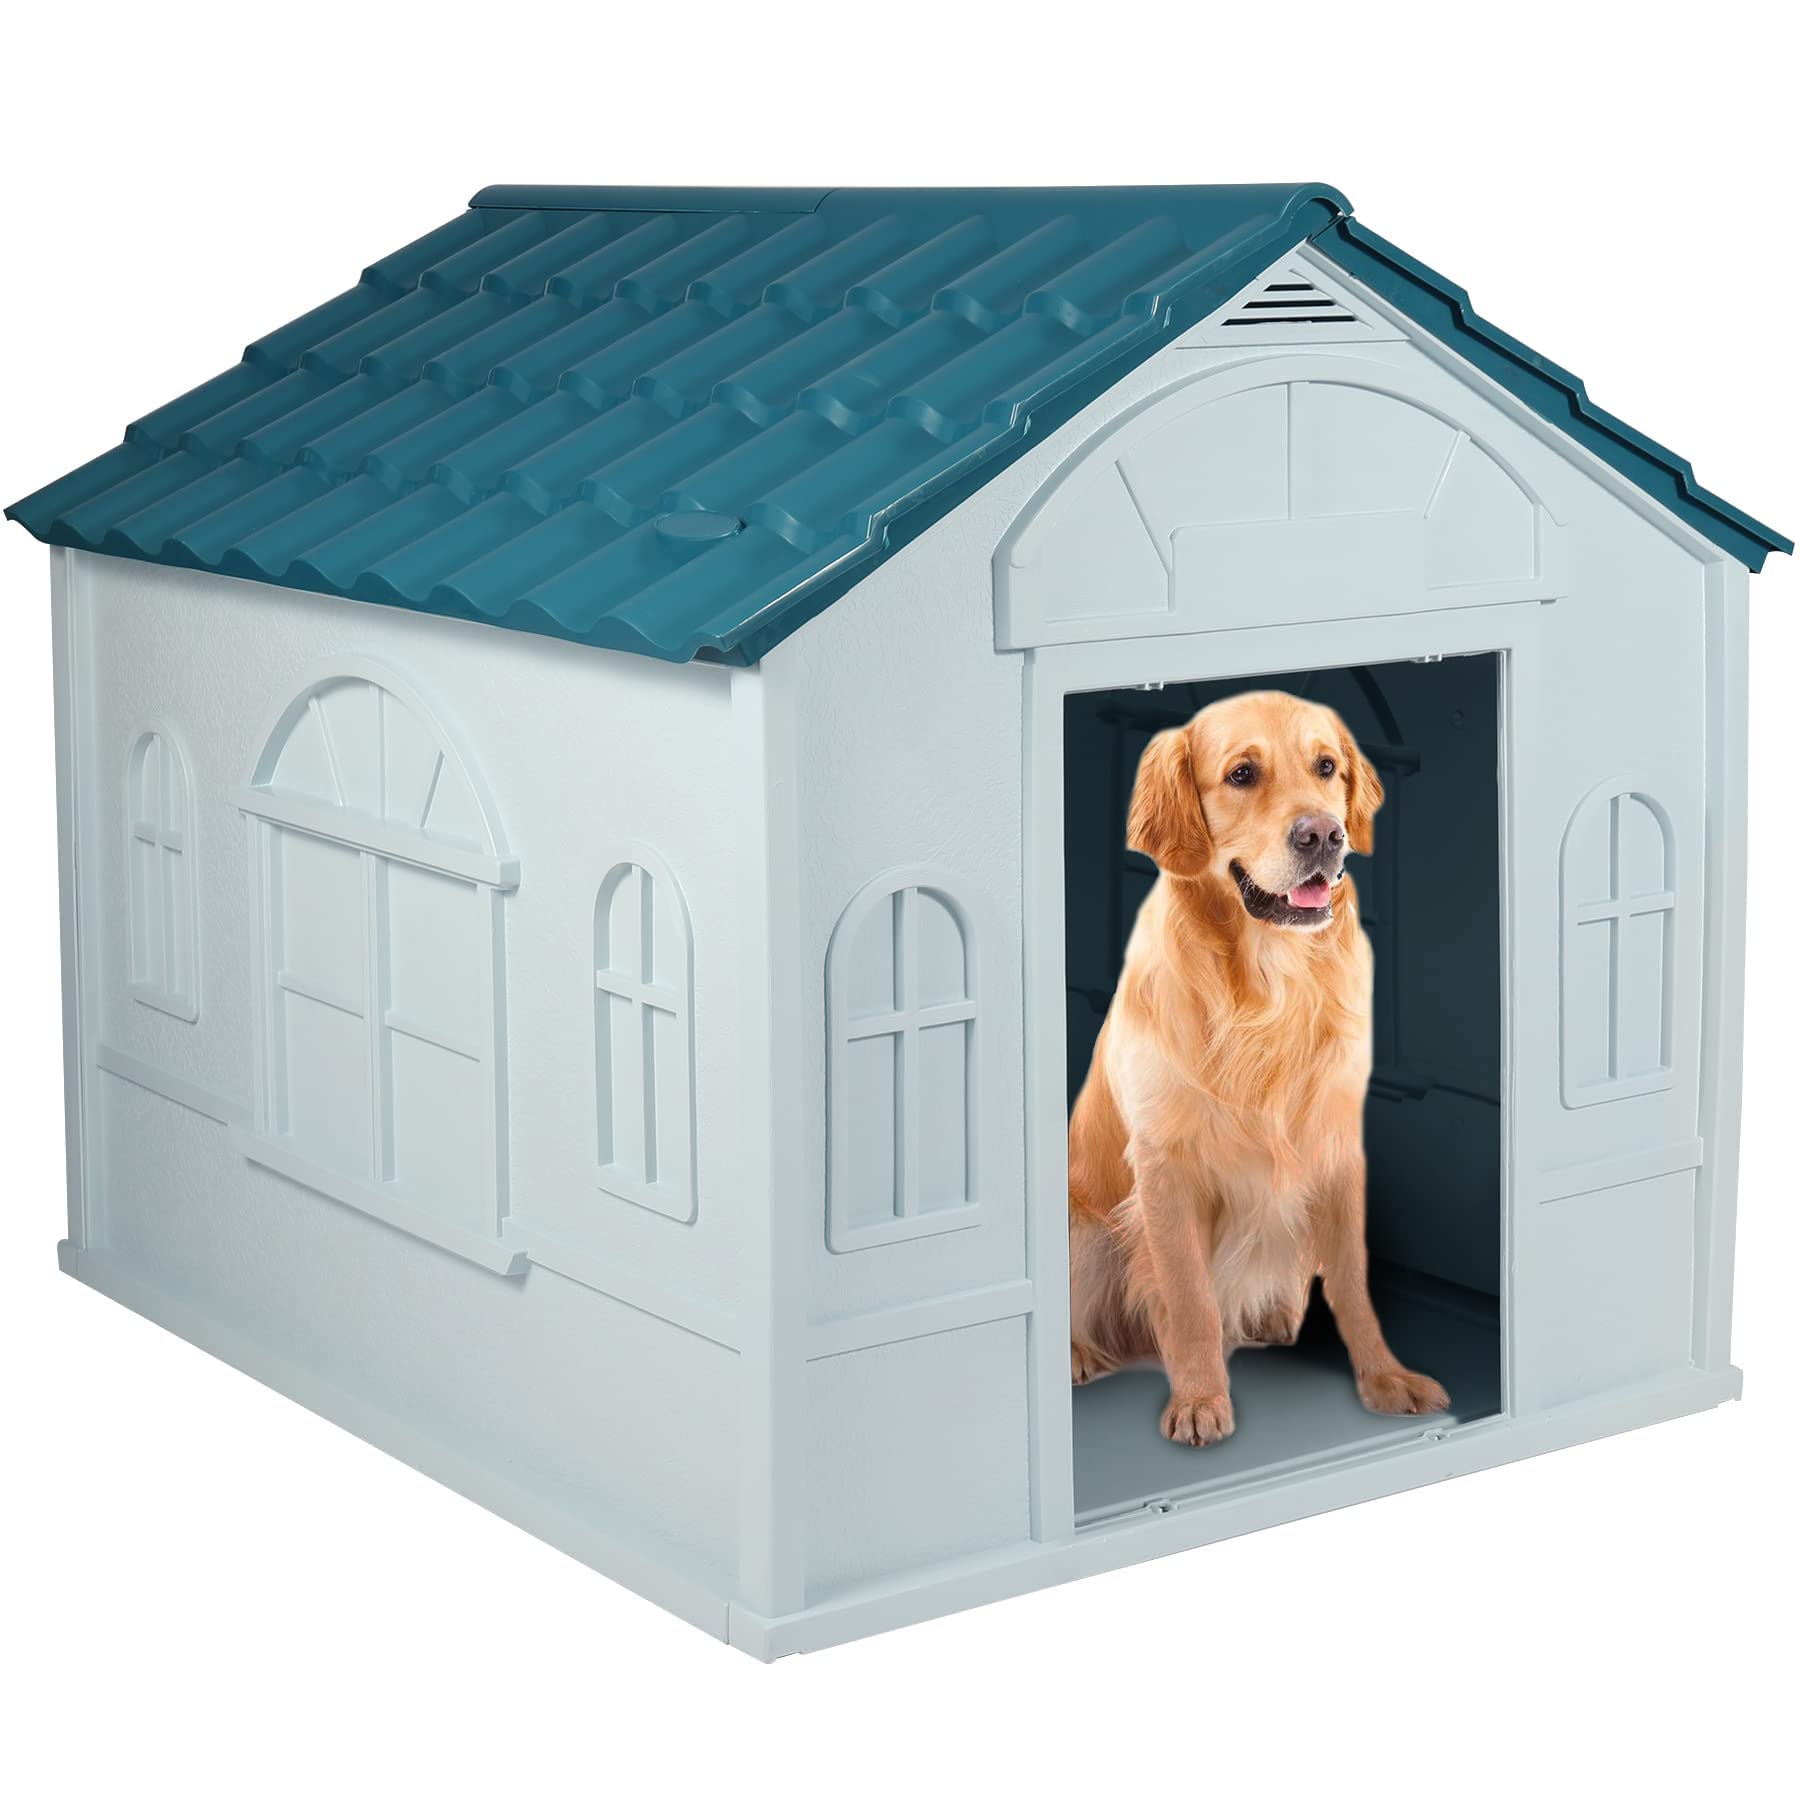 送料無料Stonehomy 39 Length Height Durable Waterproof Plastic Dog House for Medium Large Dogs All-Weather Protected Pet